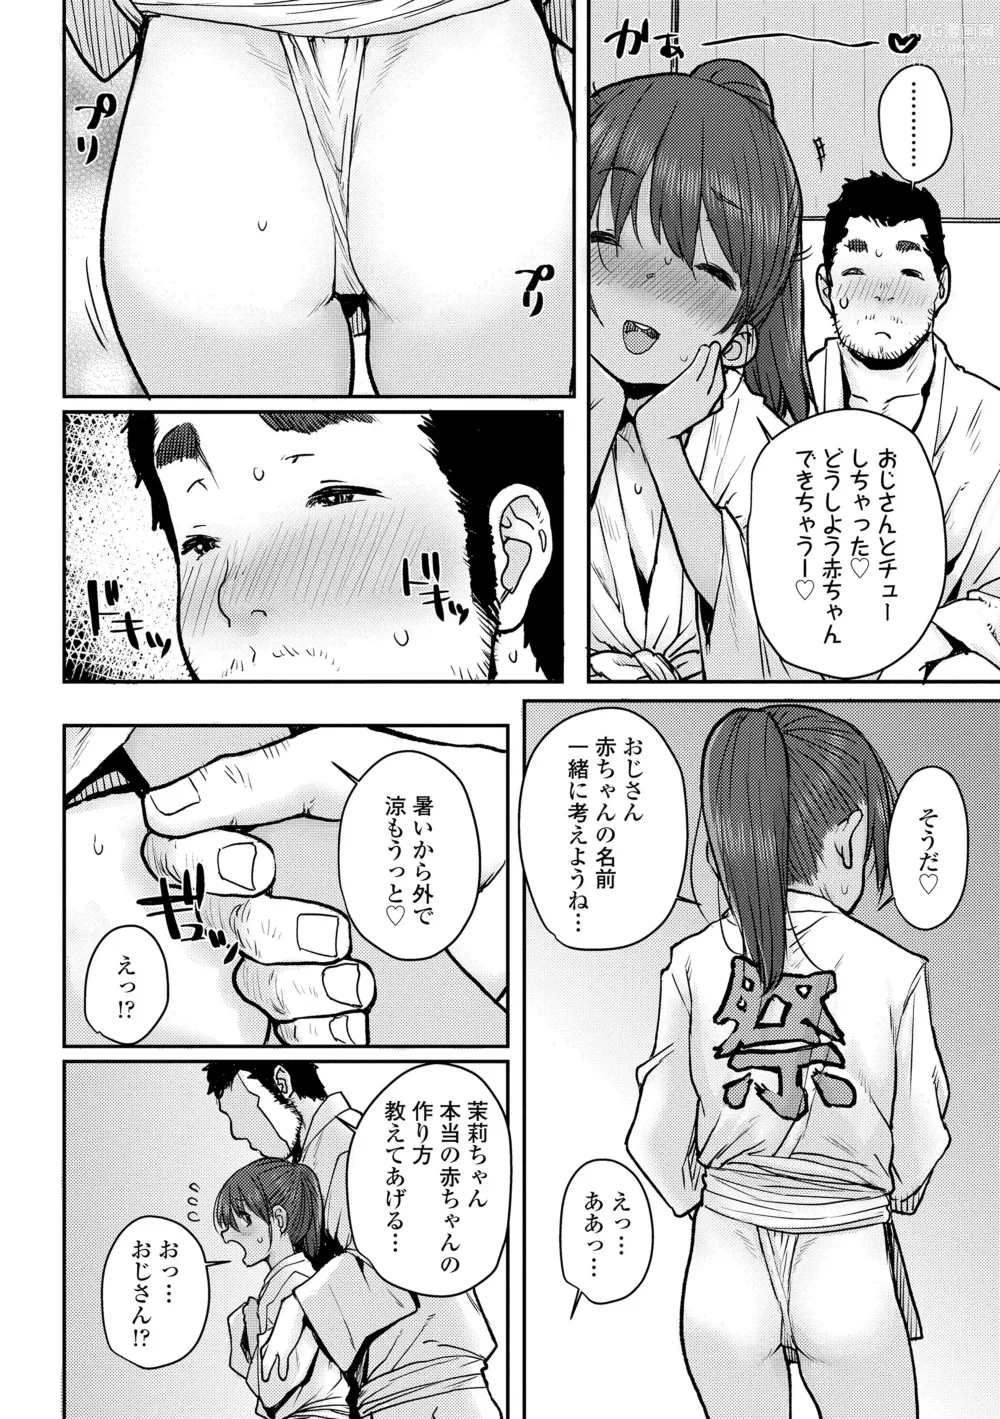 Page 12 of manga Love Love Dakko Shiyo - Love Love hug me